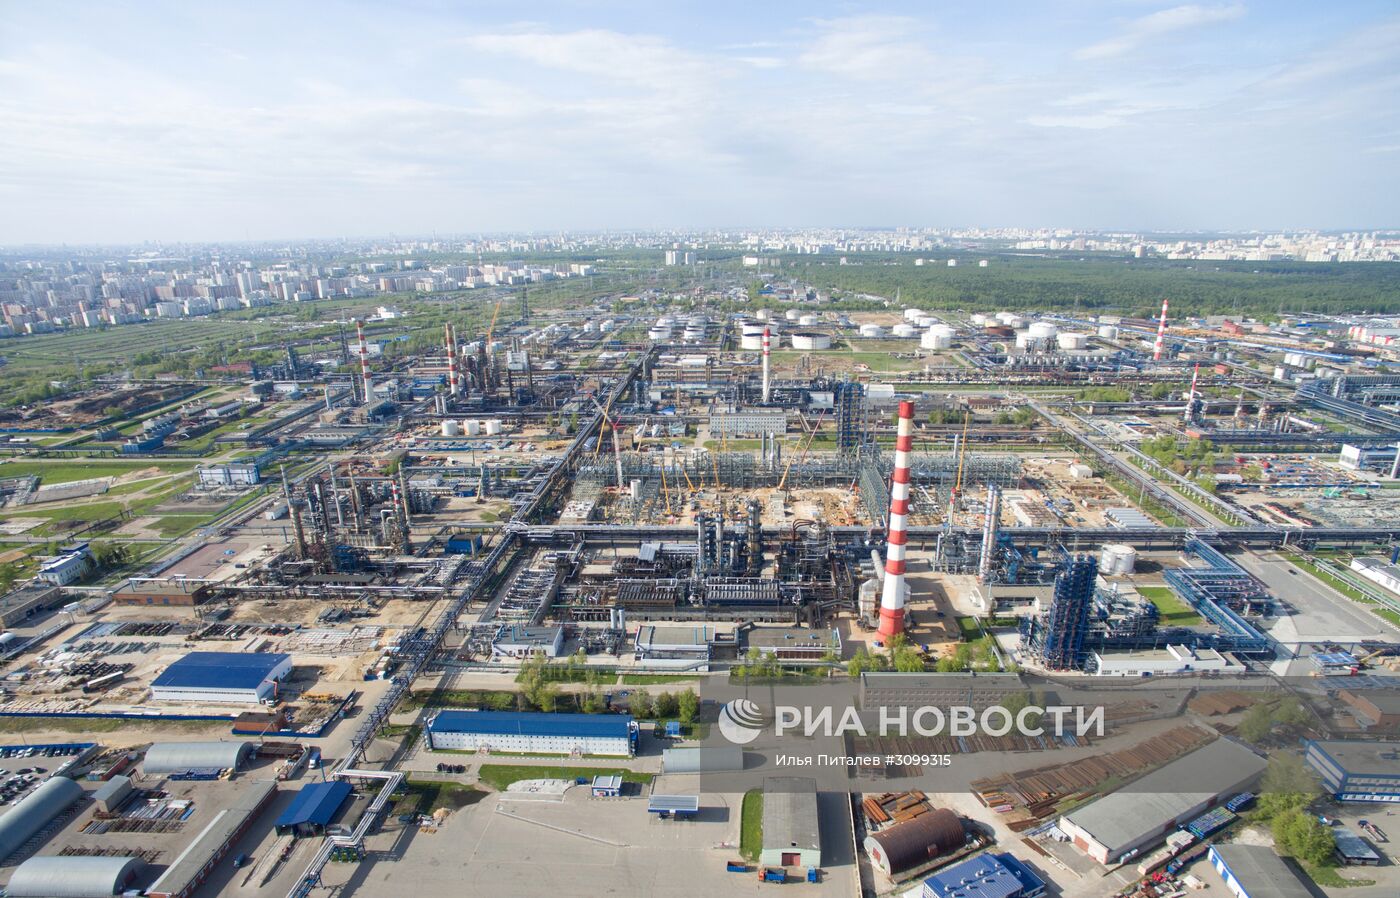 Московский НПЗ остановил прием нефти из-за нештатной ситуации